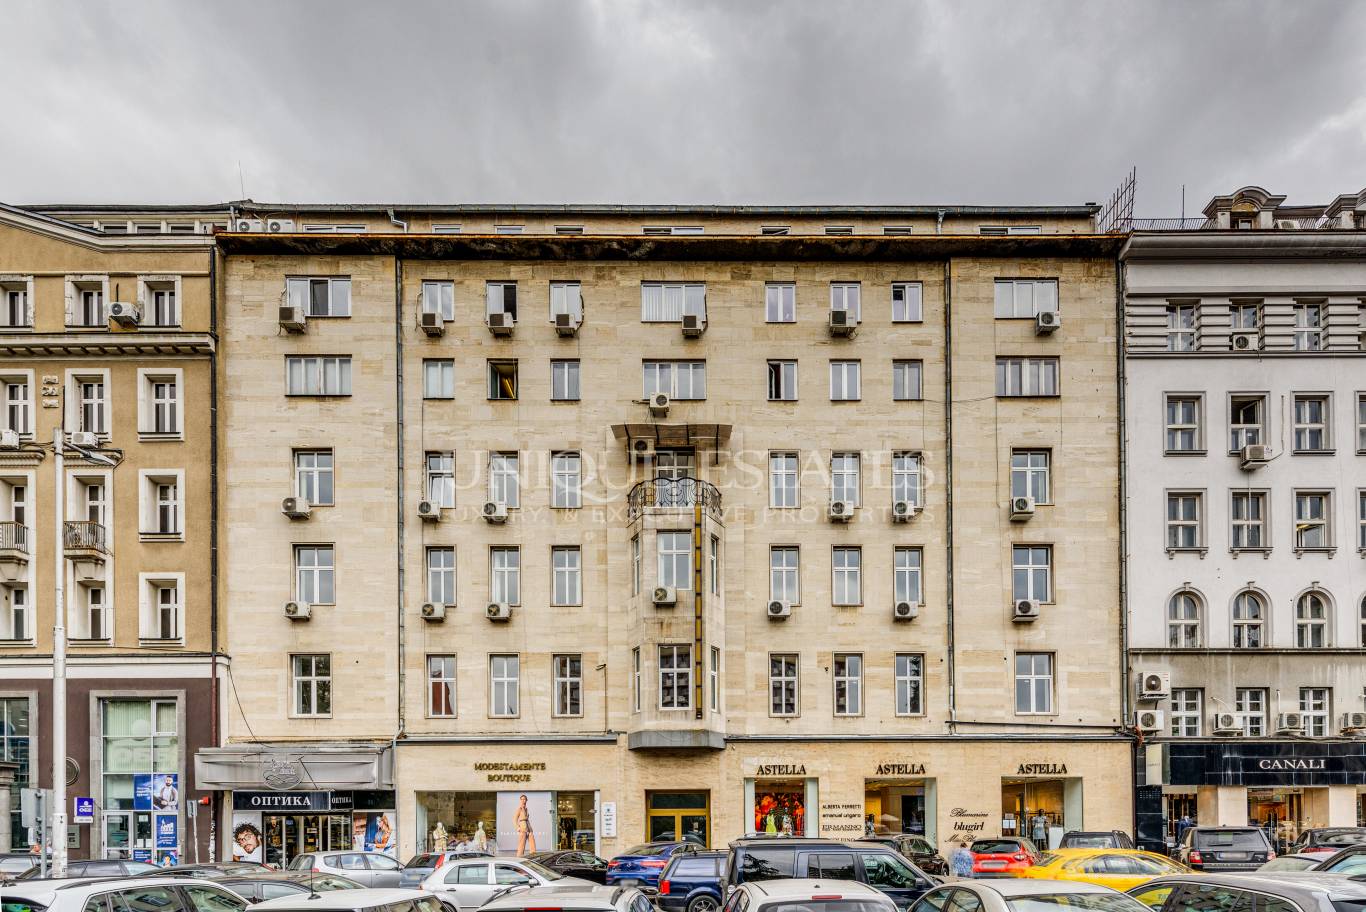 Офис под наем в София, Център - код на имота: K4831 - image 1